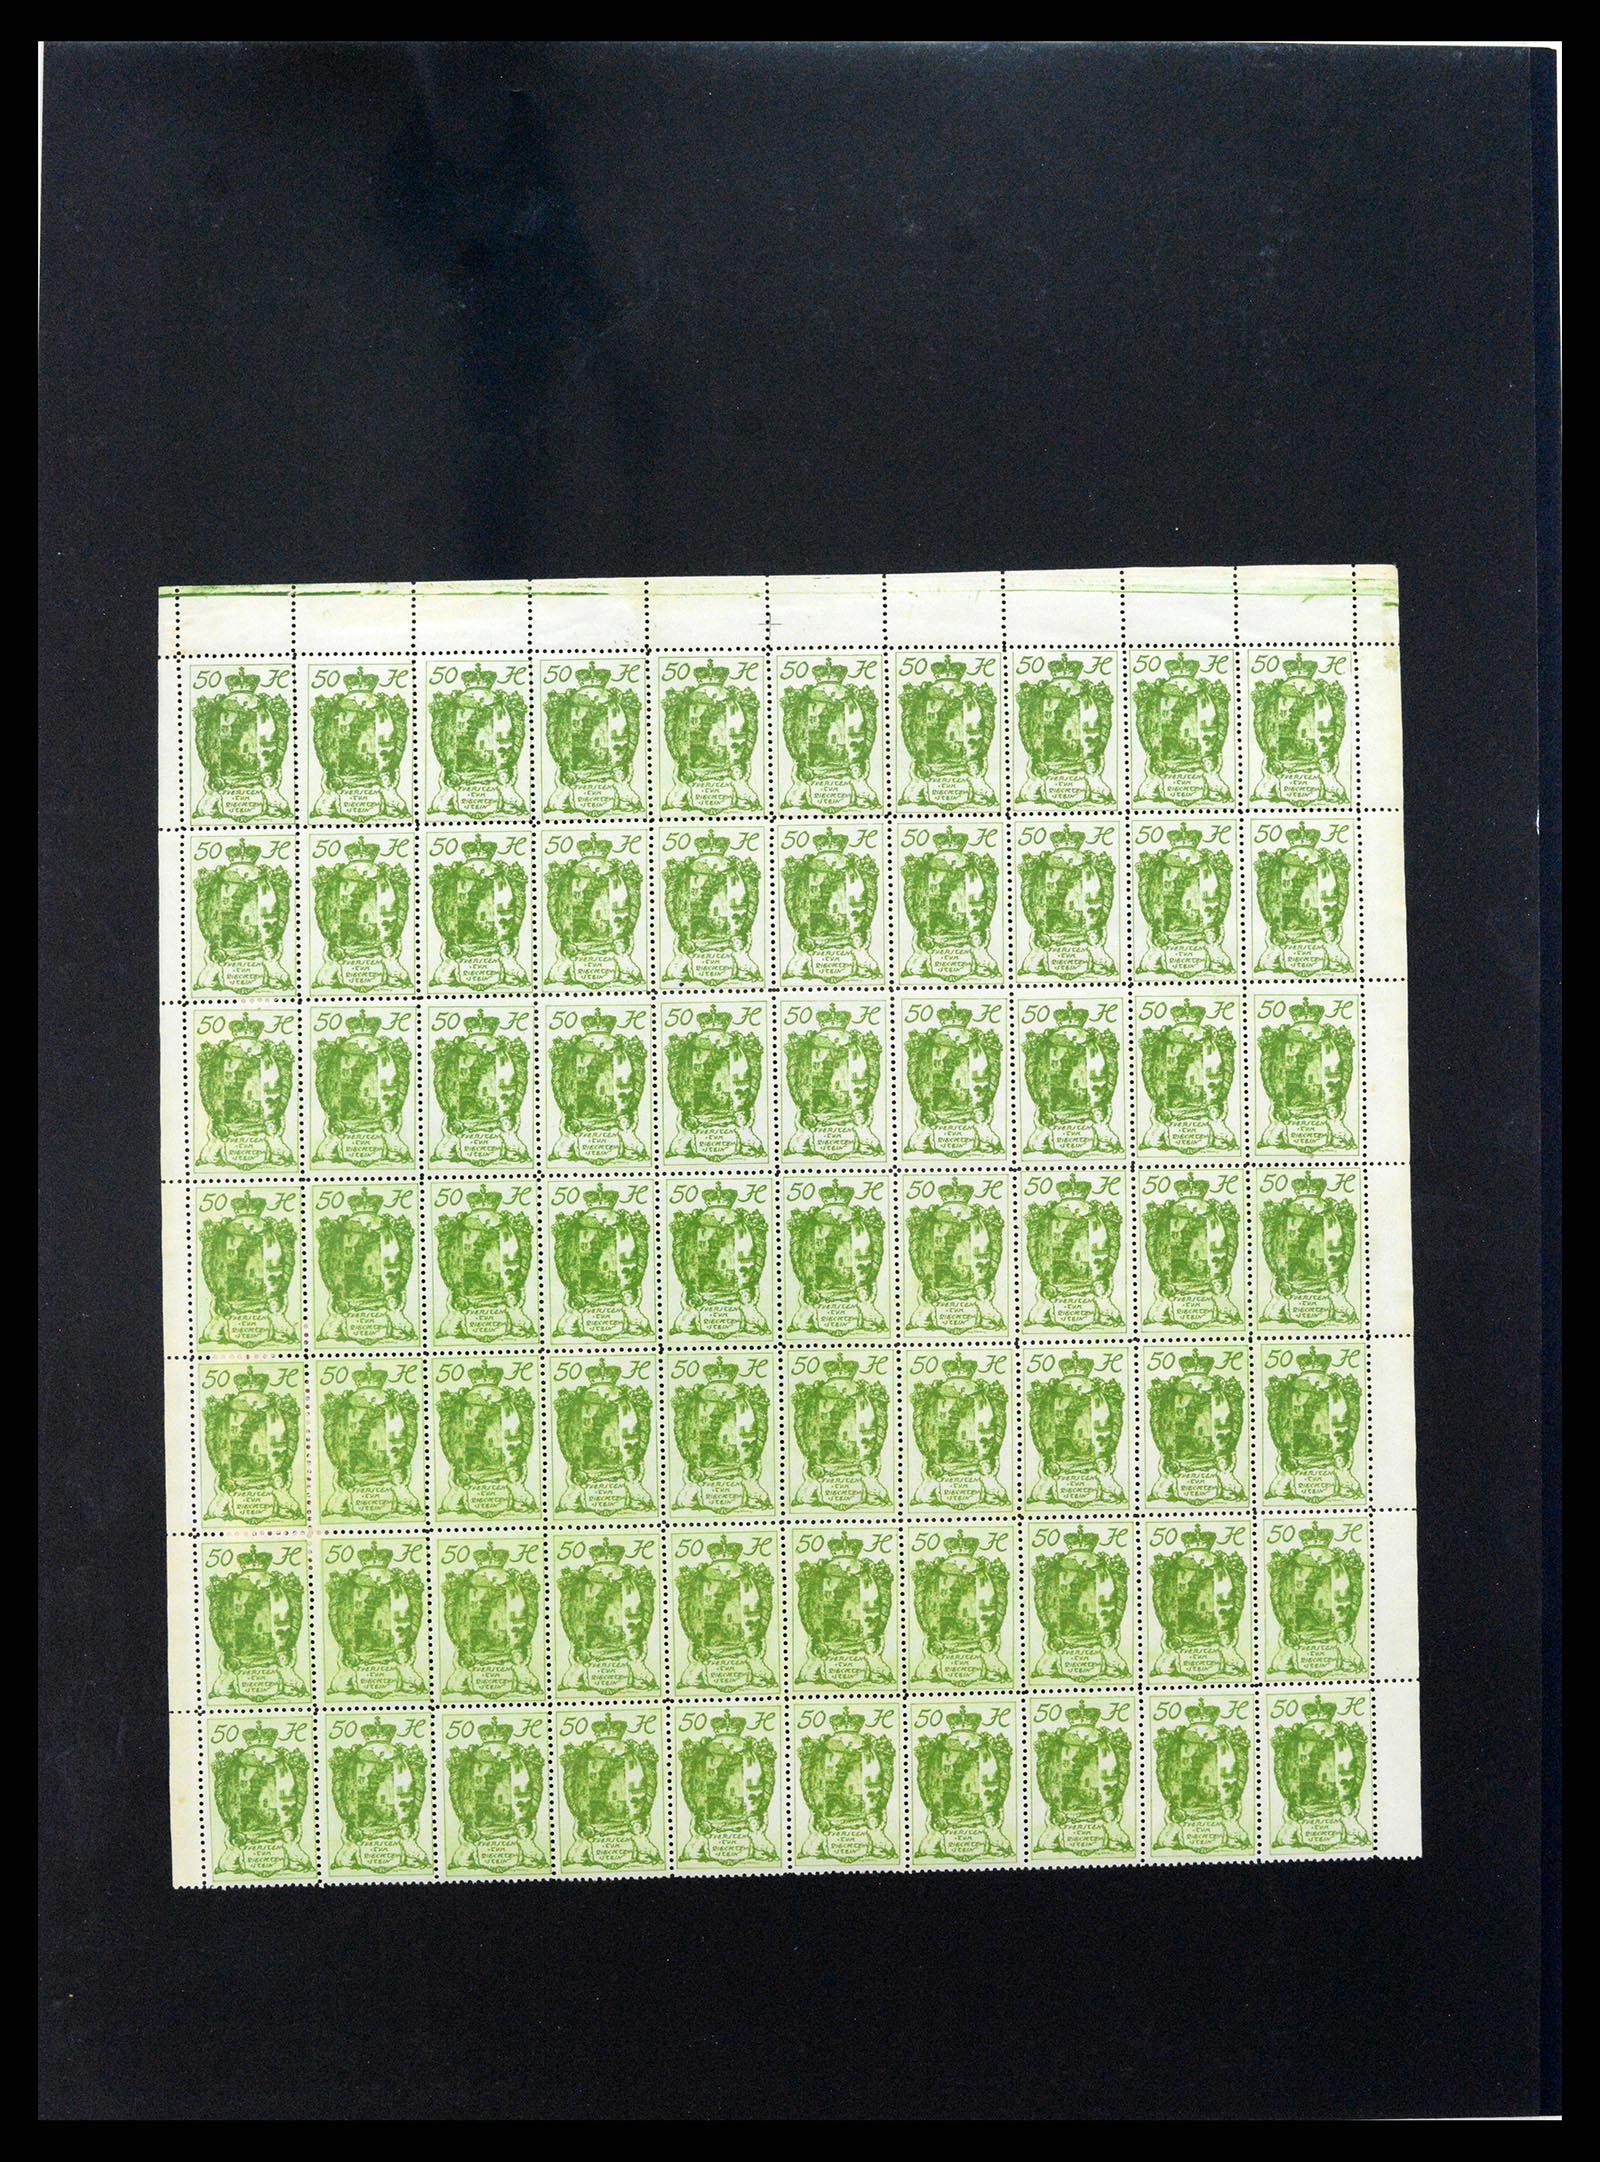 37150 1663 - Stamp collection 37150 Liechtenstein supercollection 1912-1962.